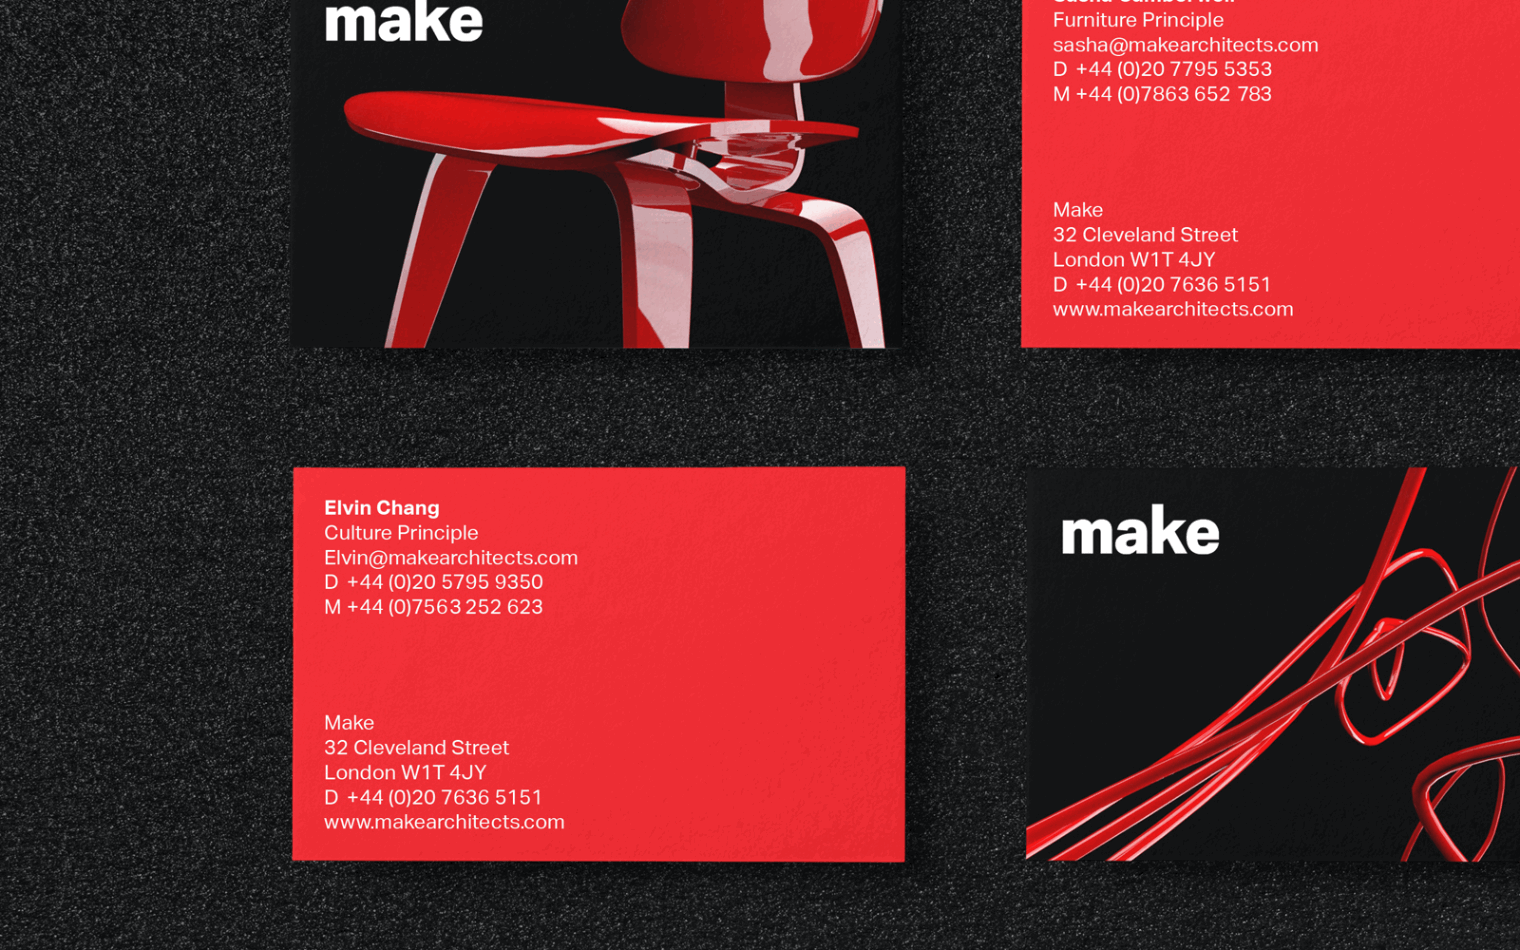 Make | Steve Edge Design